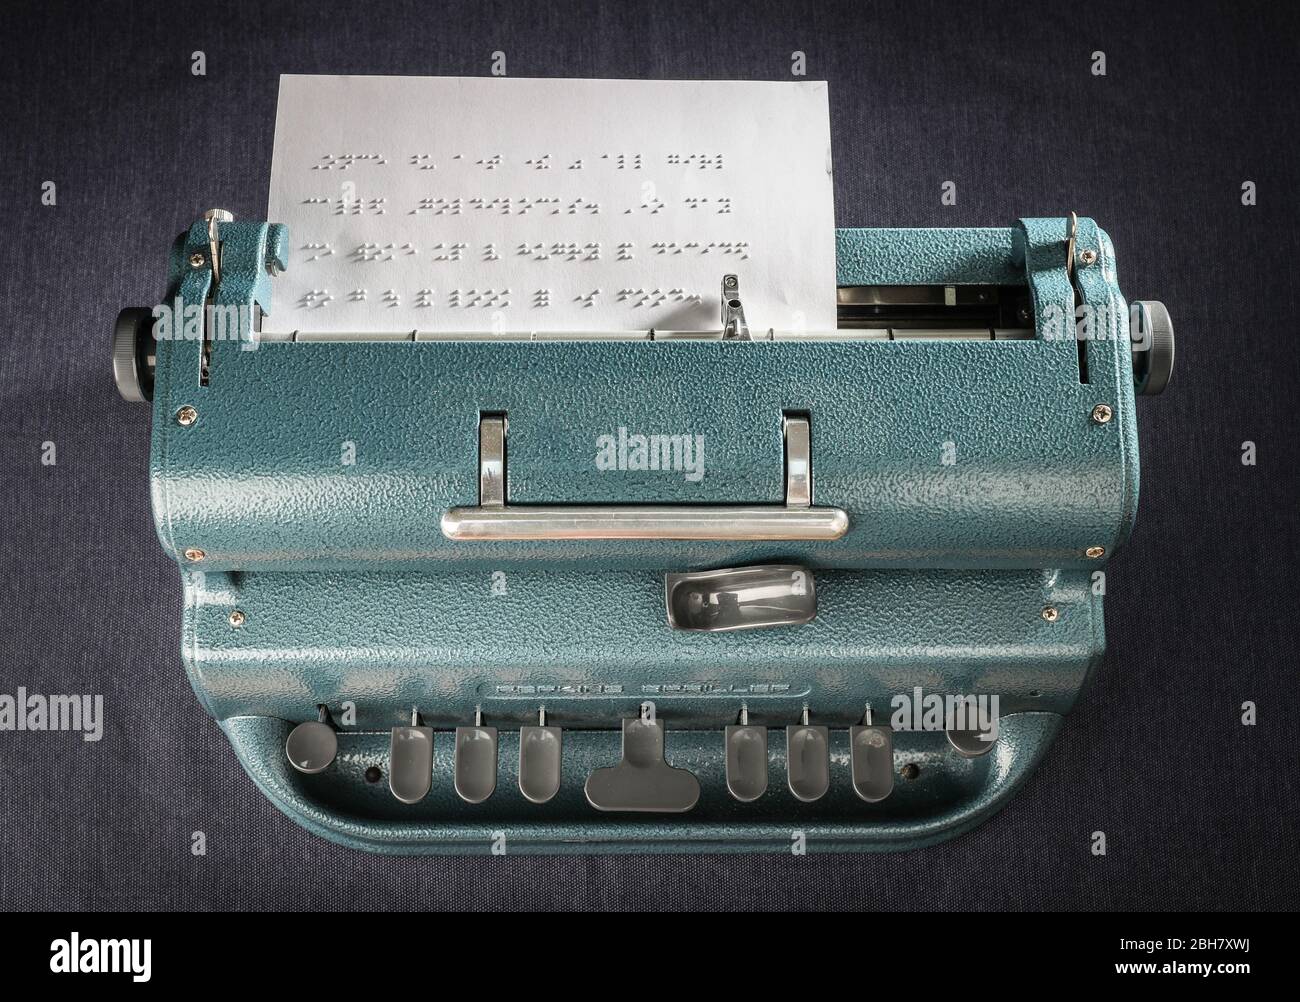 A Perkins Brailler braille typewriter. Stock Photo